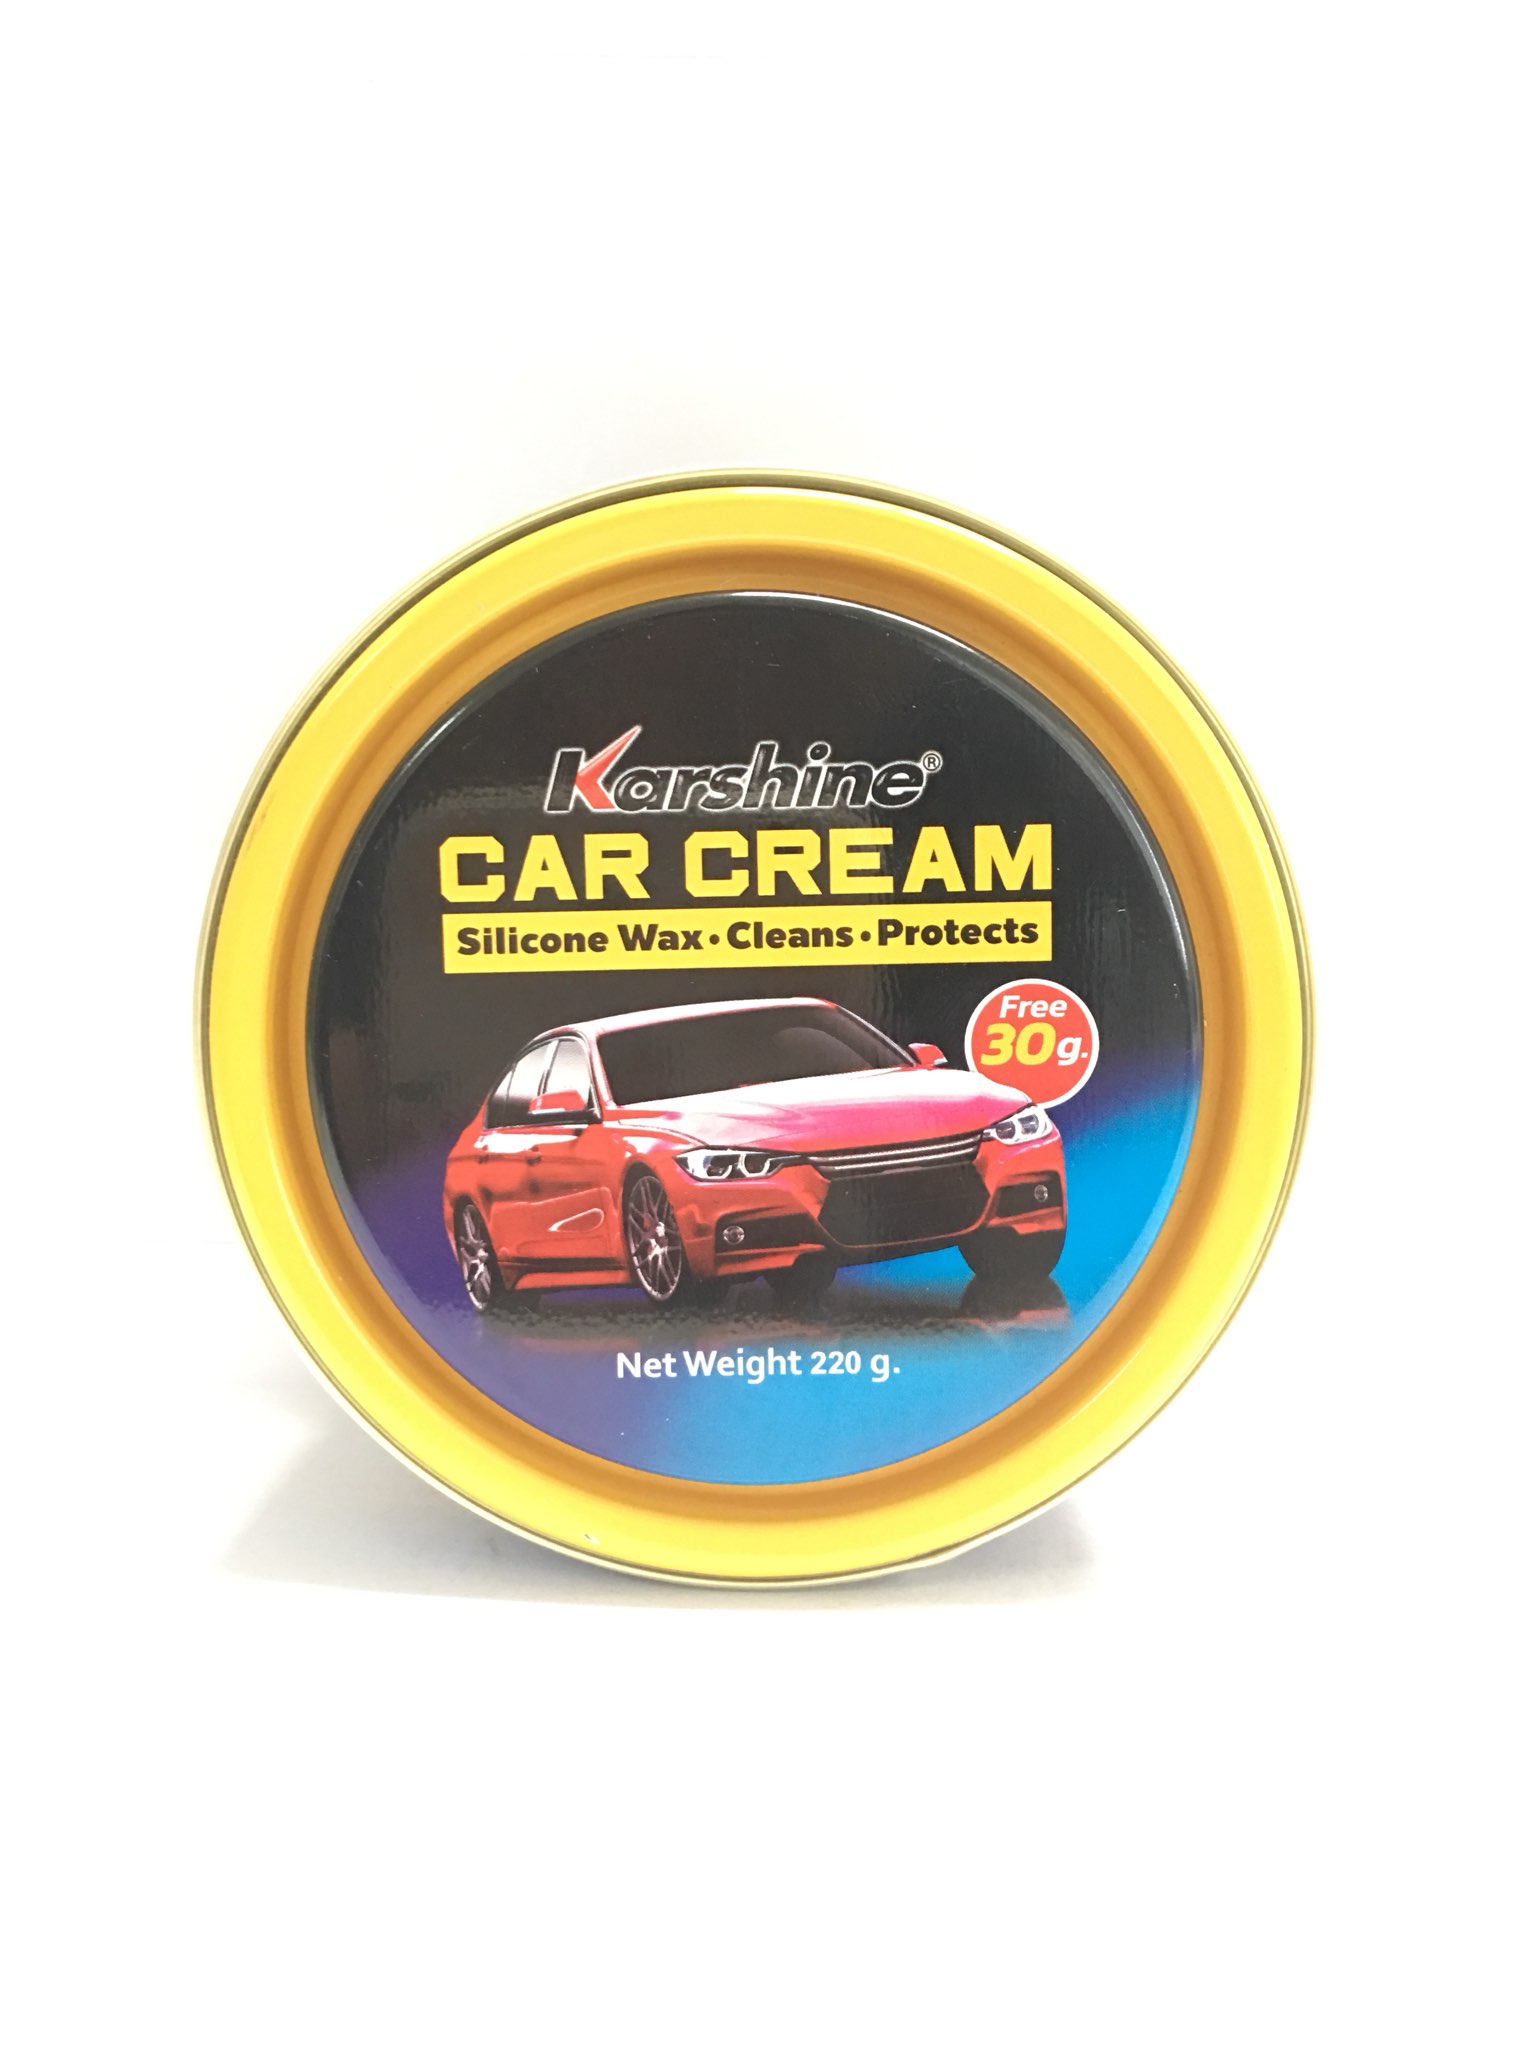 Kem đánh bóng sơn xe ô tô (Car Cream) Karshine 250g KA-CC250